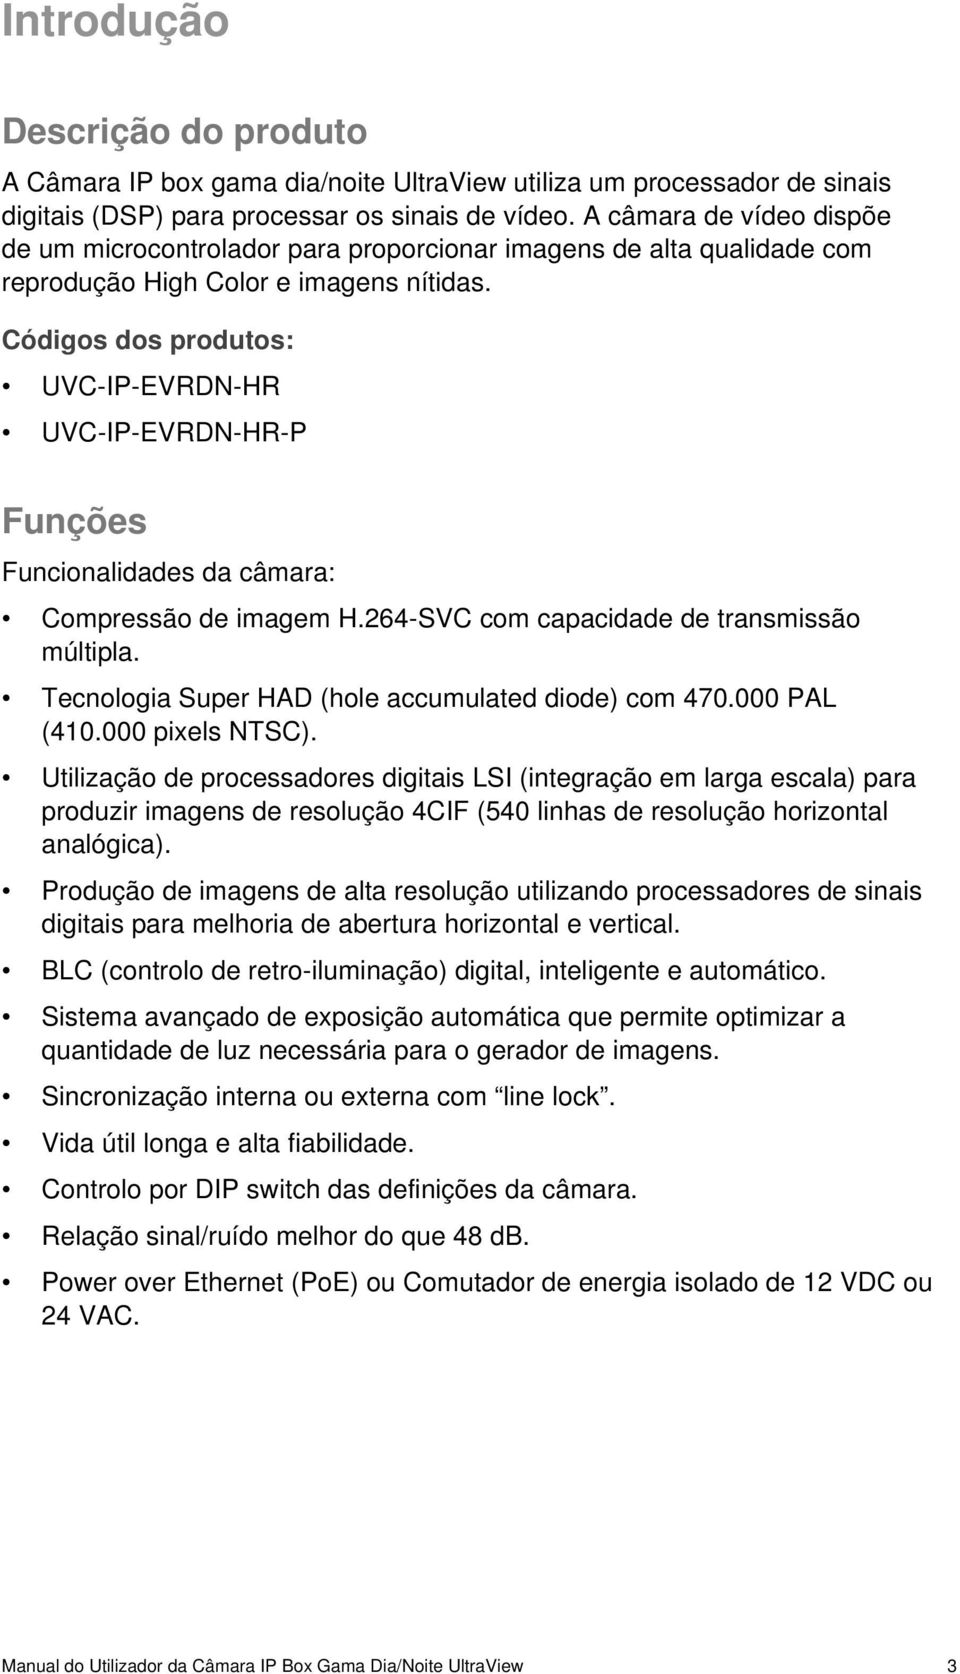 Códigos dos produtos: UVC-IP-EVRDN-HR UVC-IP-EVRDN-HR-P Funções Funcionalidades da câmara: Compressão de imagem H.264-SVC com capacidade de transmissão múltipla.